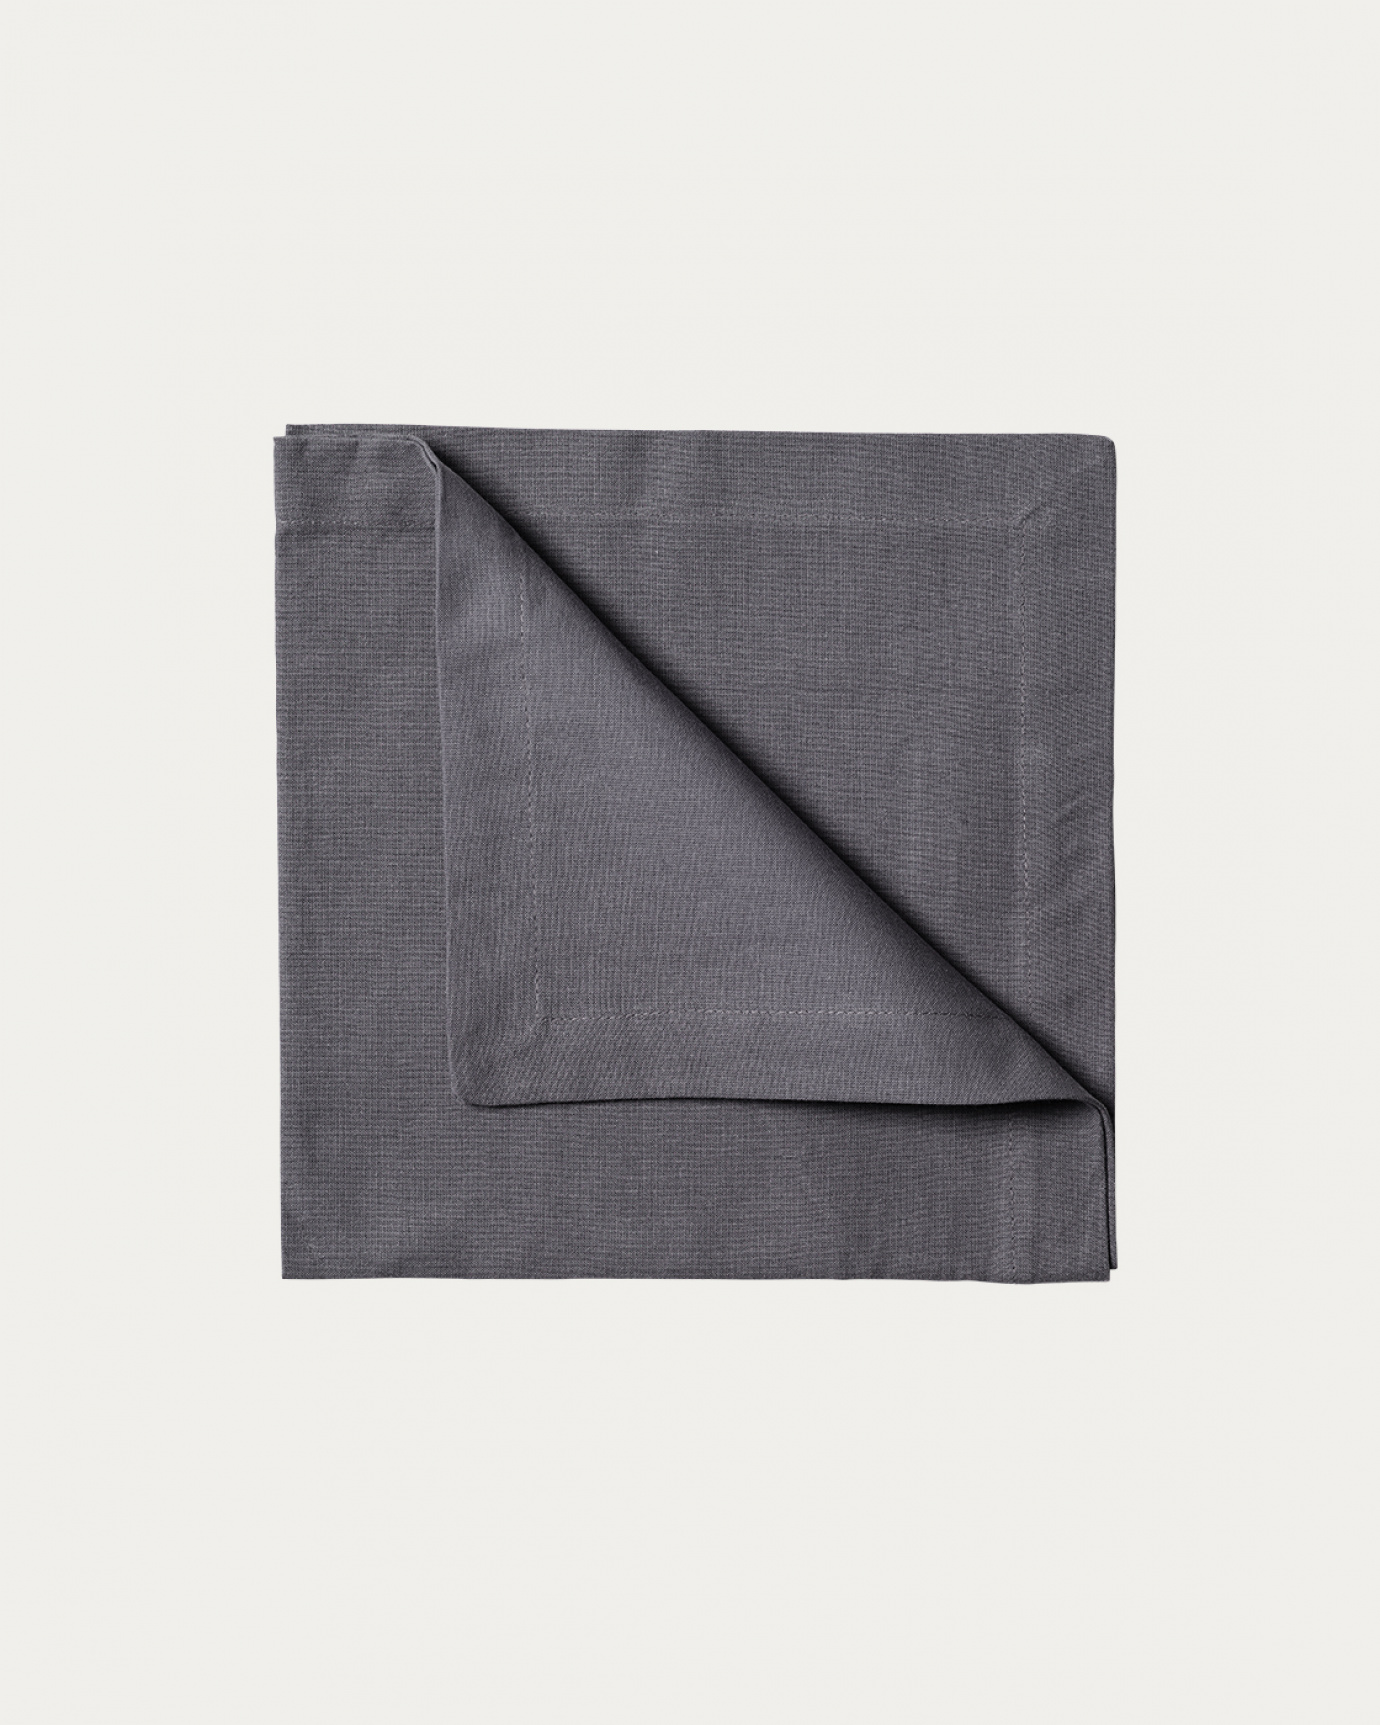 Produktbild granitgrau ROBERT Serviette aus weicher Baumwolle von LINUM DESIGN. Größe 45x45 cm und in 4er-Pack verkauft.